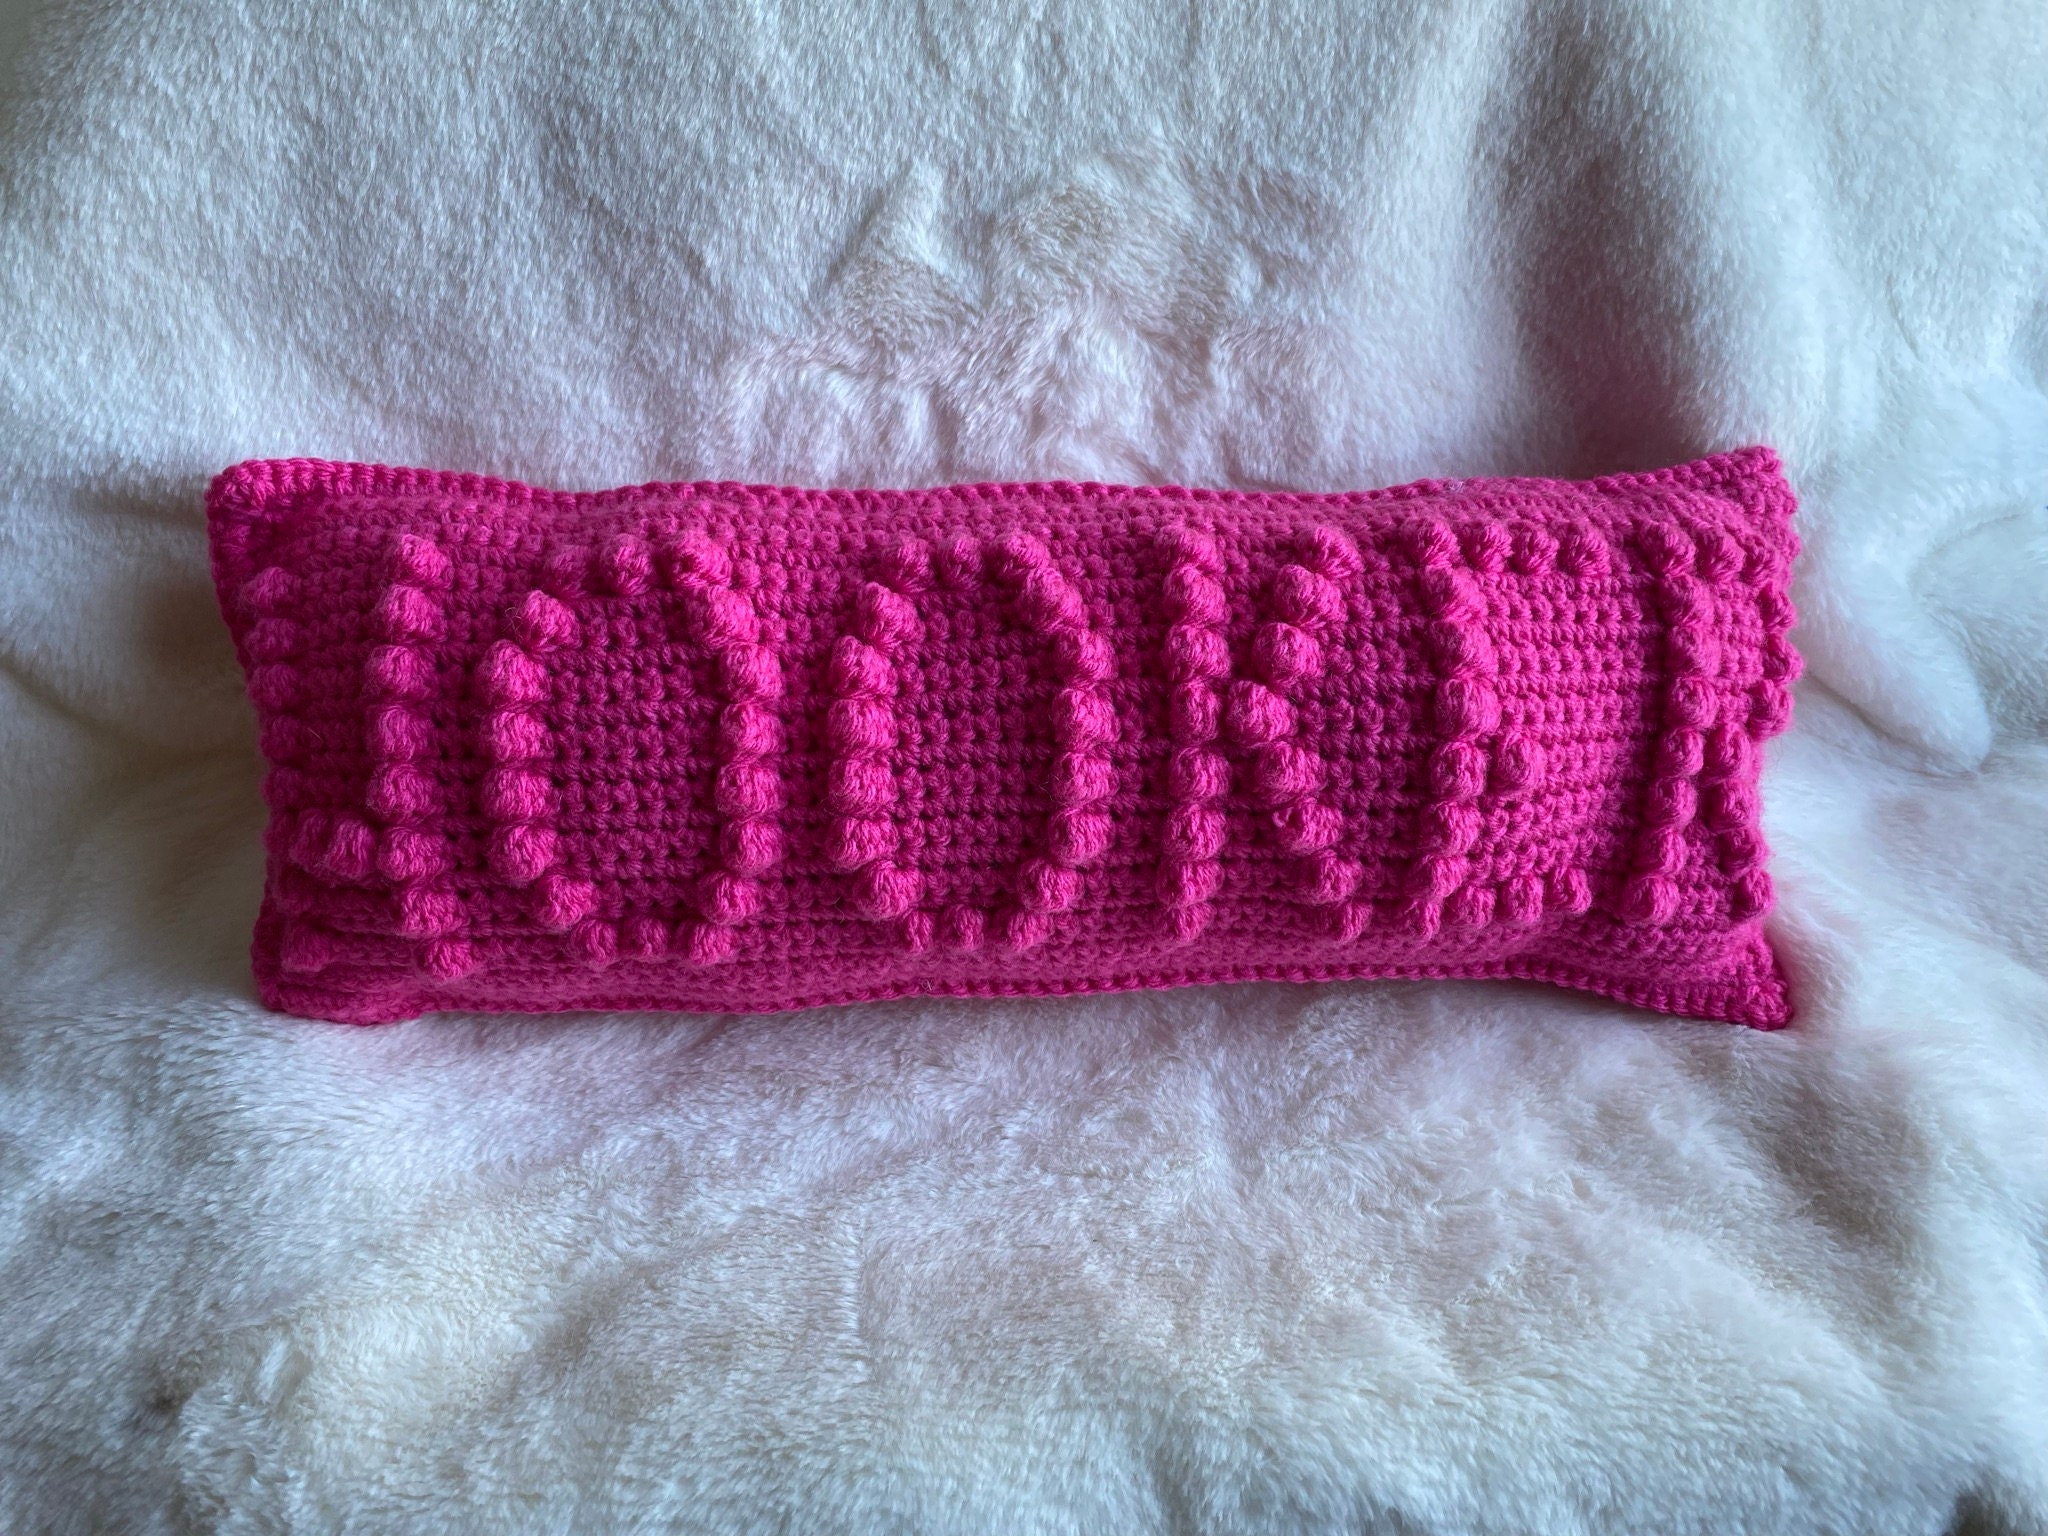  Crochet Pillow Support